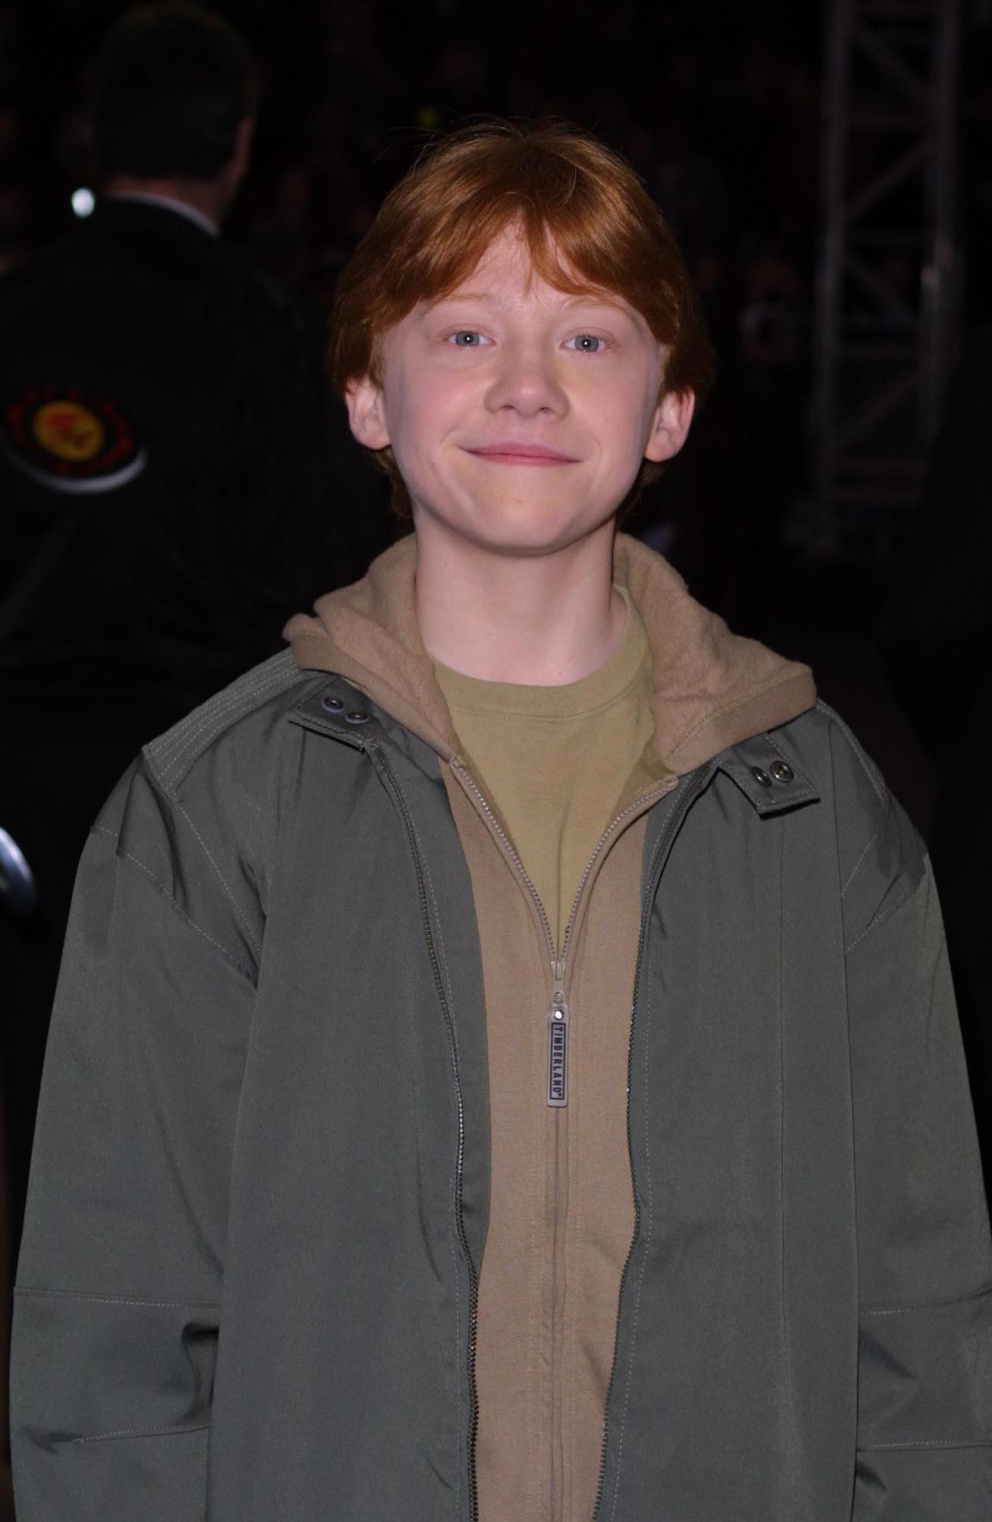 Rupert Grint jako dítě

Ruperta Grinta si nejspíše pamatuje každý díky jeho vtipným grimasám a obdivuhodné práci s hlasem v roli Rona Weasleyho.
